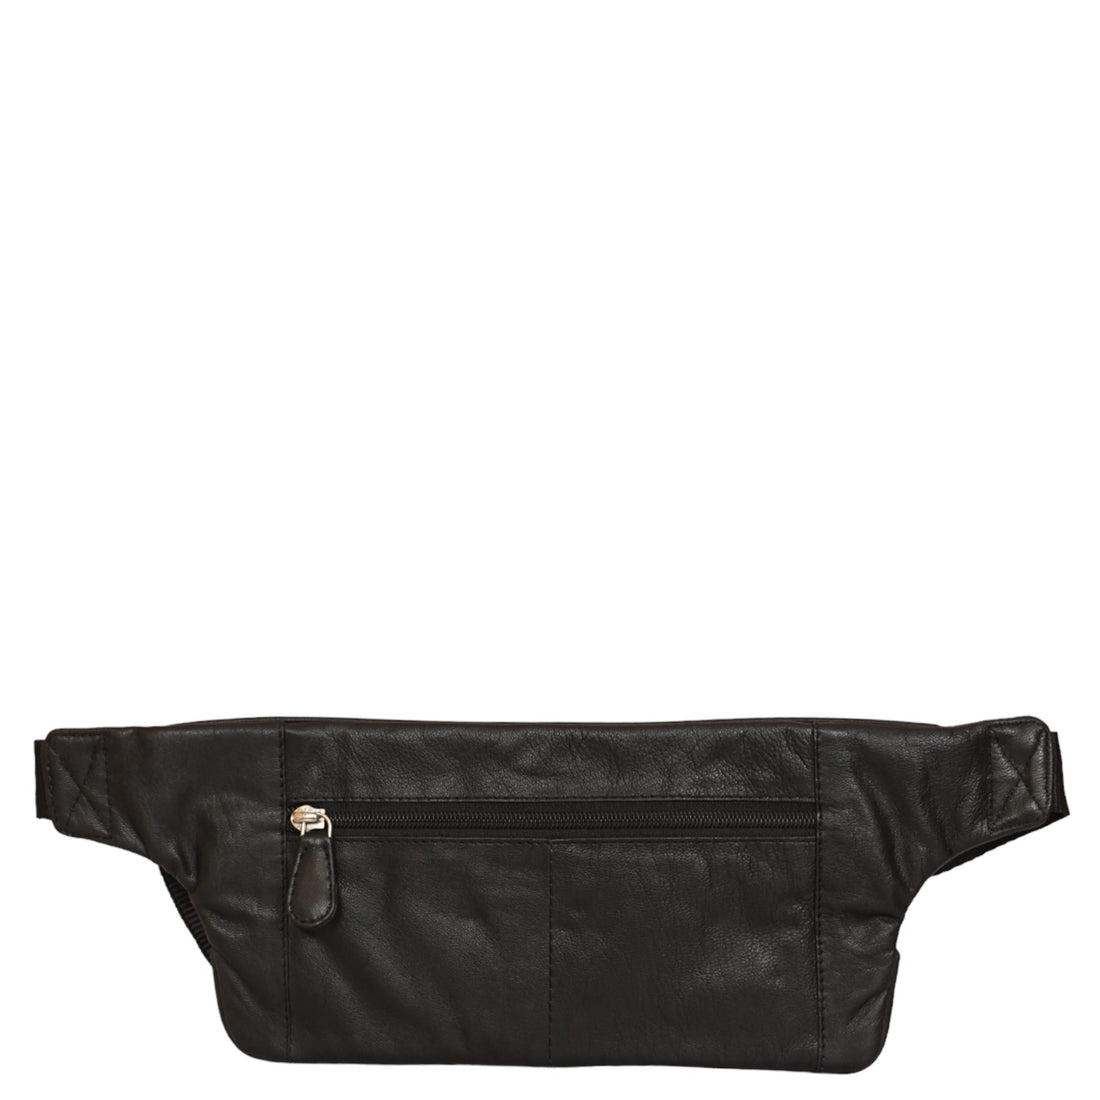 Leather Waist Bag GBB03A